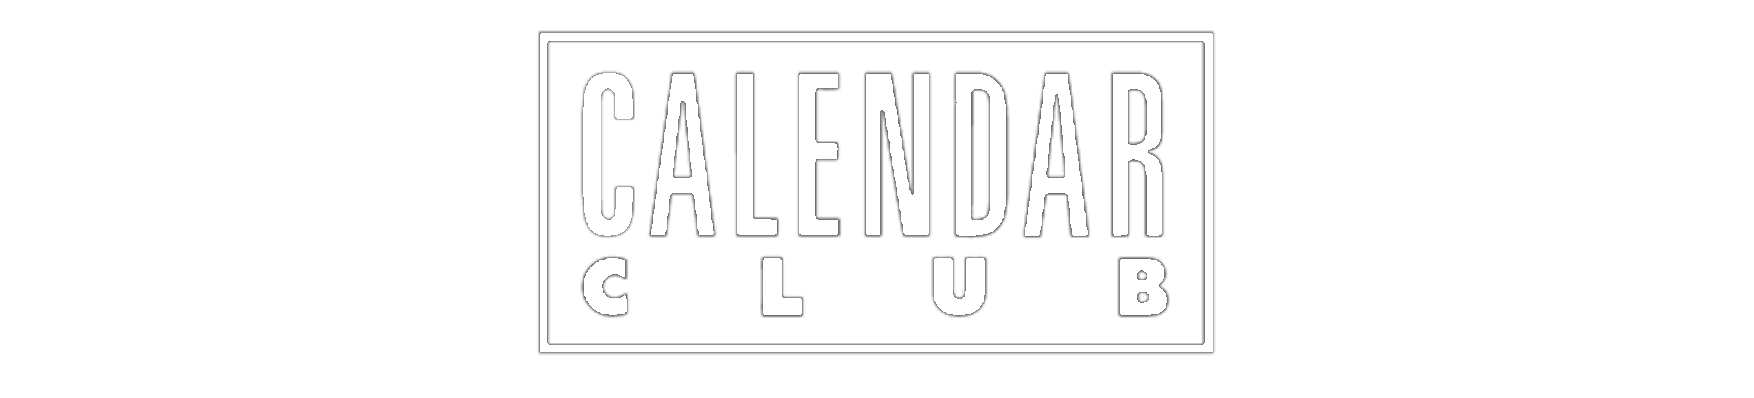 Calendar Club logo